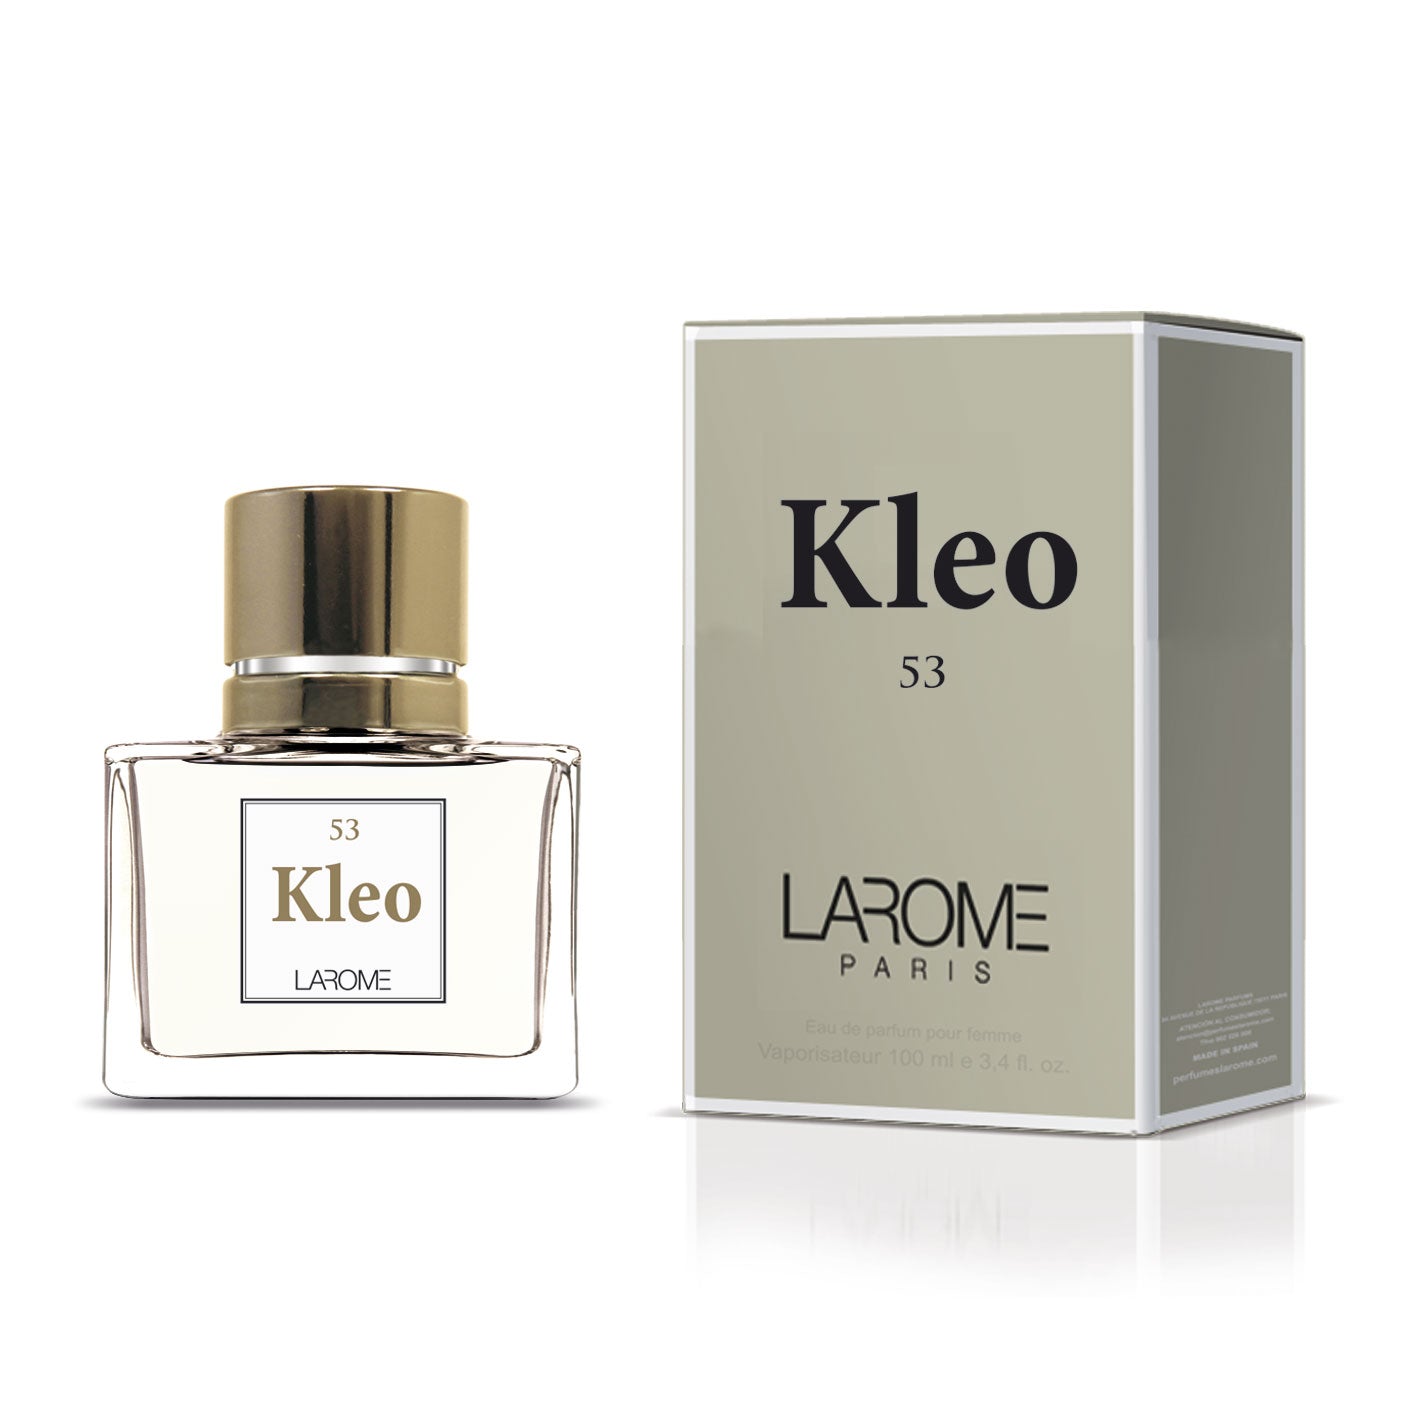 KLEO 53F by LAROME geïnspireerd door Chloé